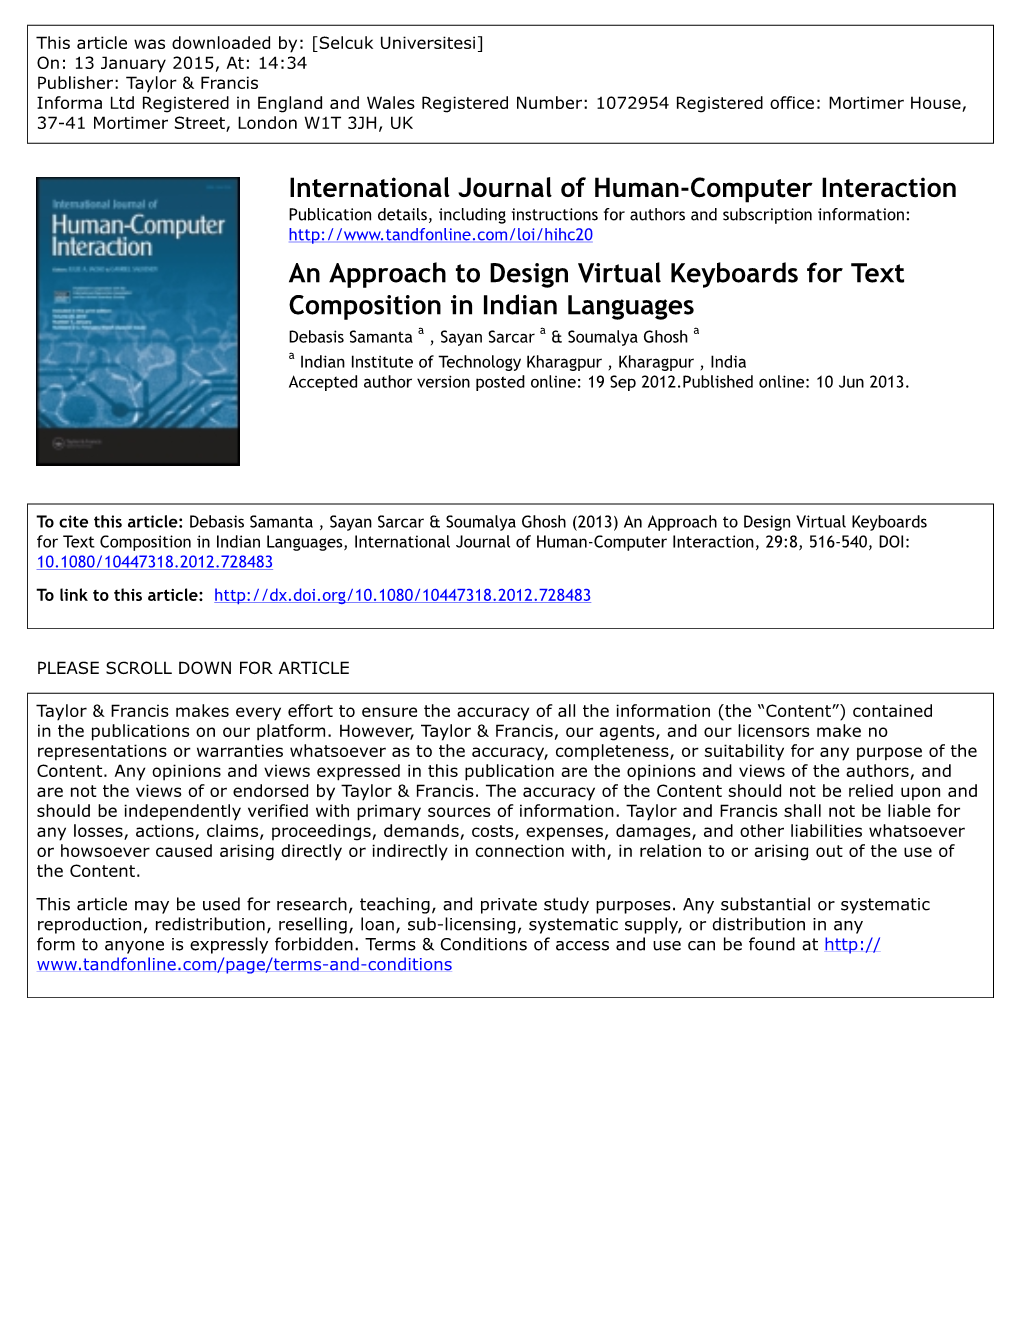 International Journal of Human-Computer Interaction An